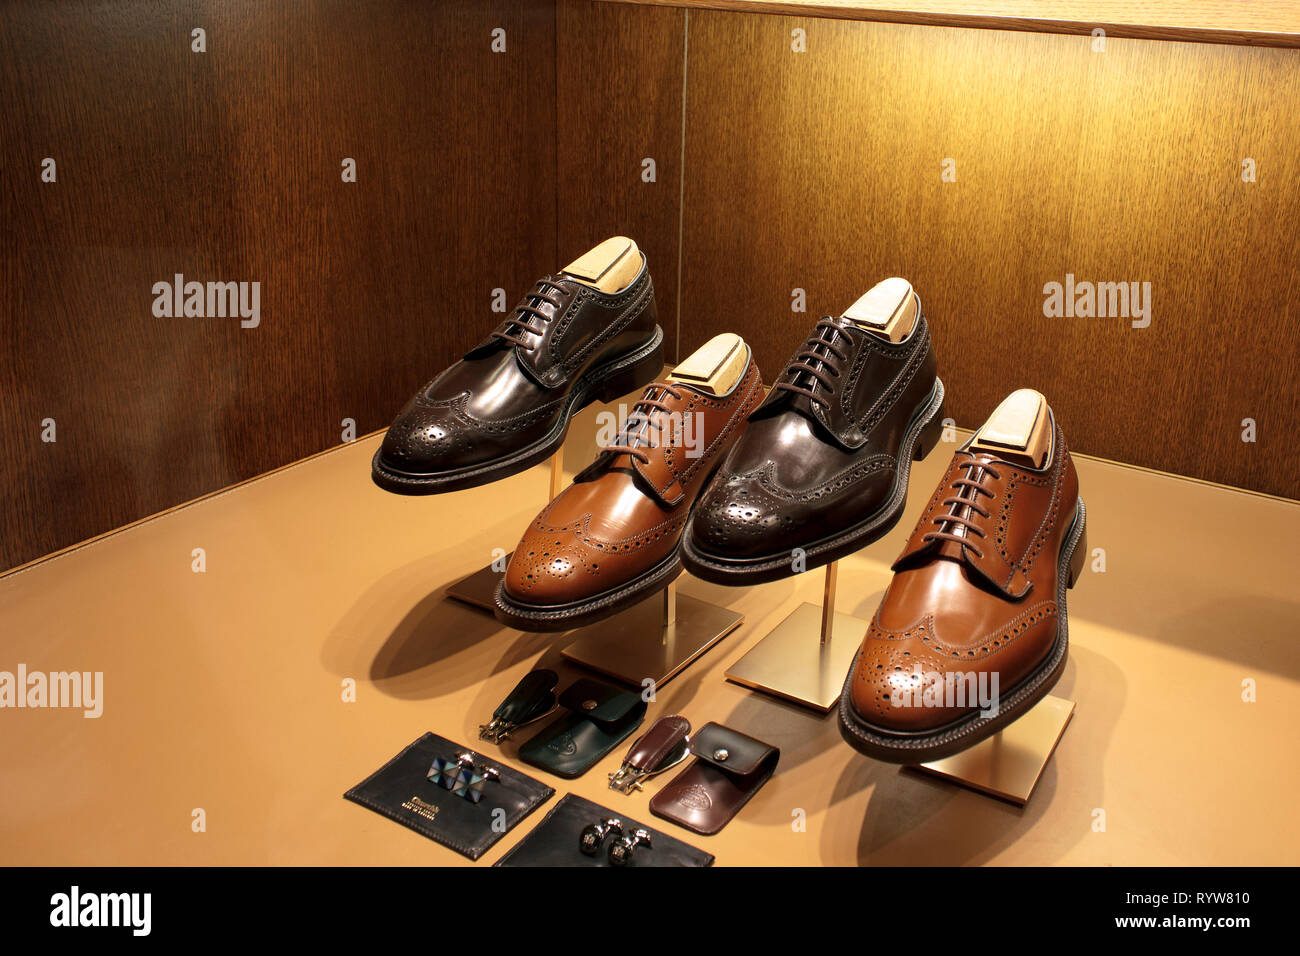 Britische Schuhe auf Anzeige, London, UK Stockfotografie - Alamy